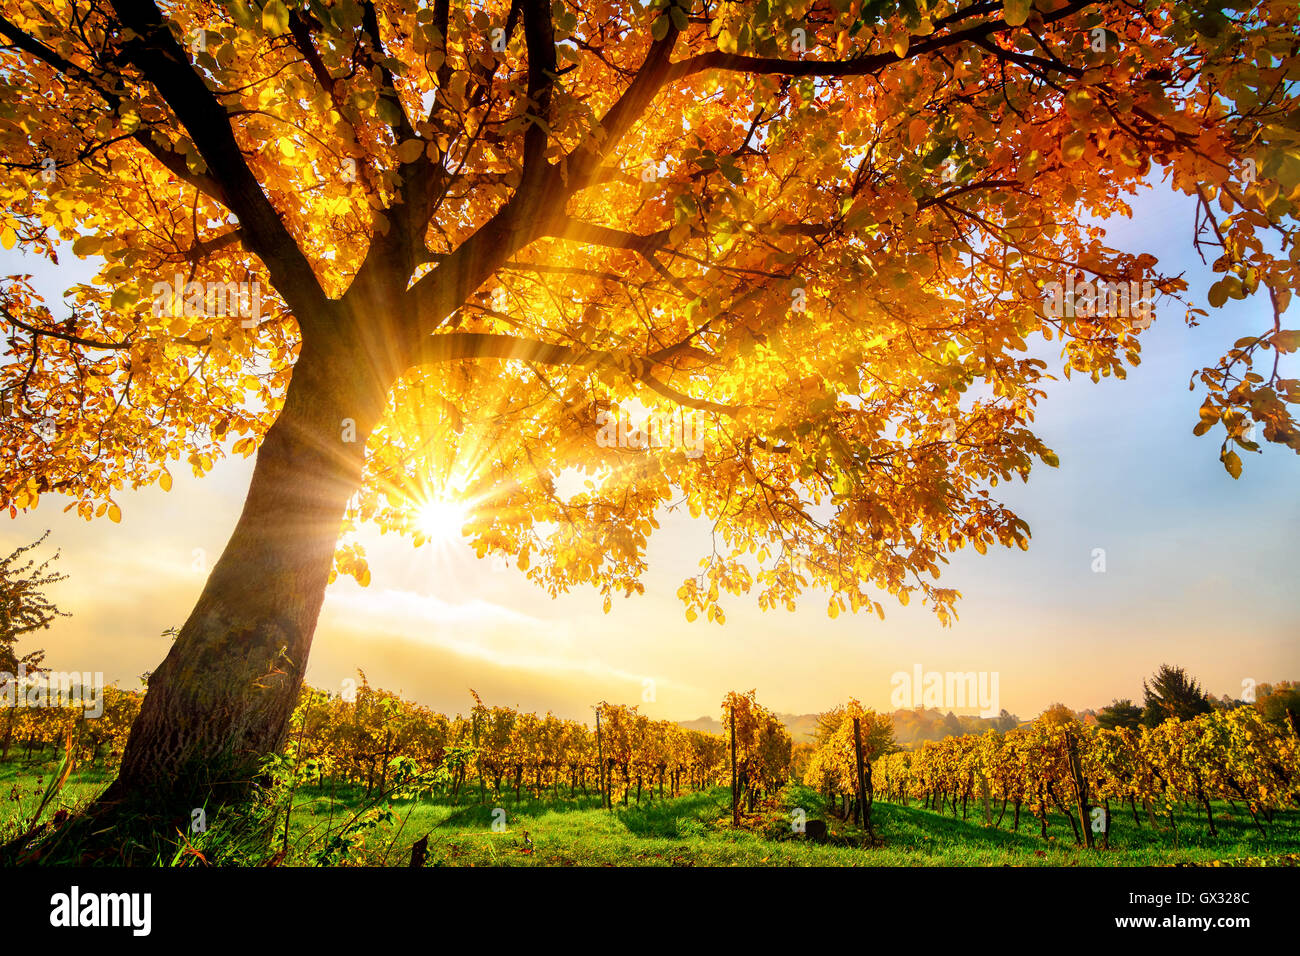 Gold Baum auf einem Weingut mit blauen Himmel und die Herbstsonne scheint warm durch seine Blätter Stockfoto